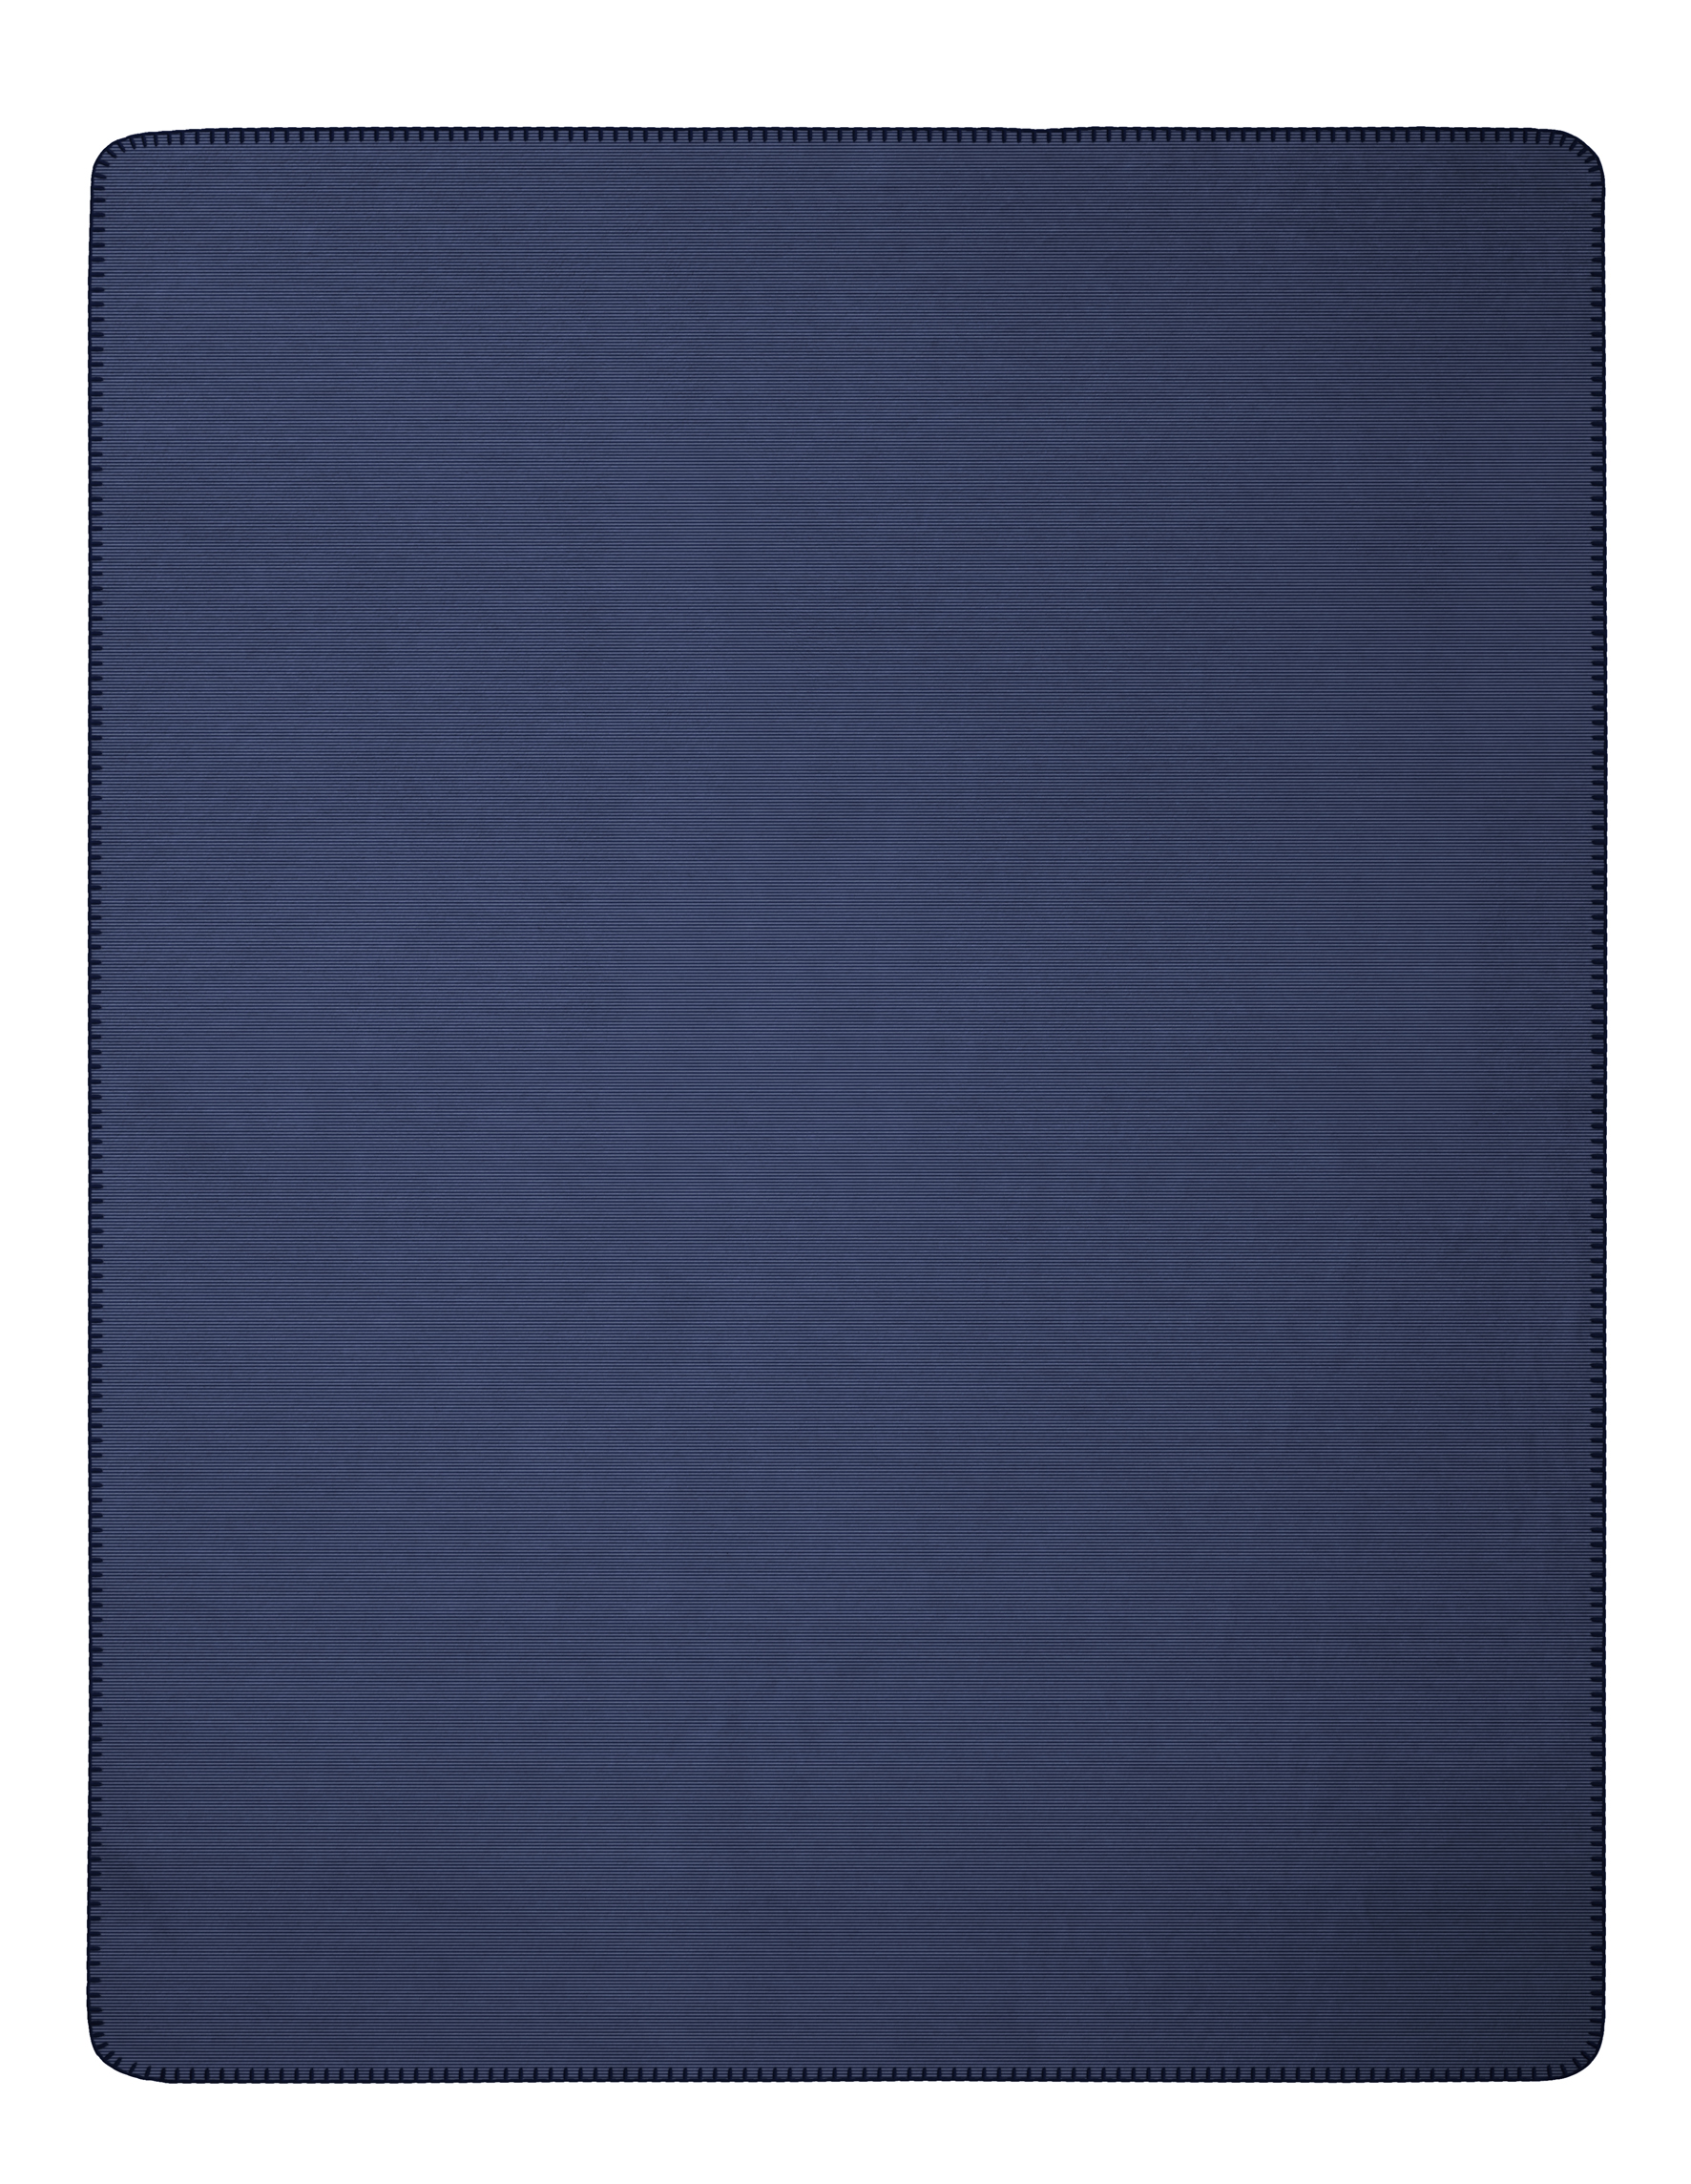 Wohndecke "Melange Doubleface" aus Baumwollmischgewebe in 150x200 cm in Marineblau-Silbergrau - Vorderseite